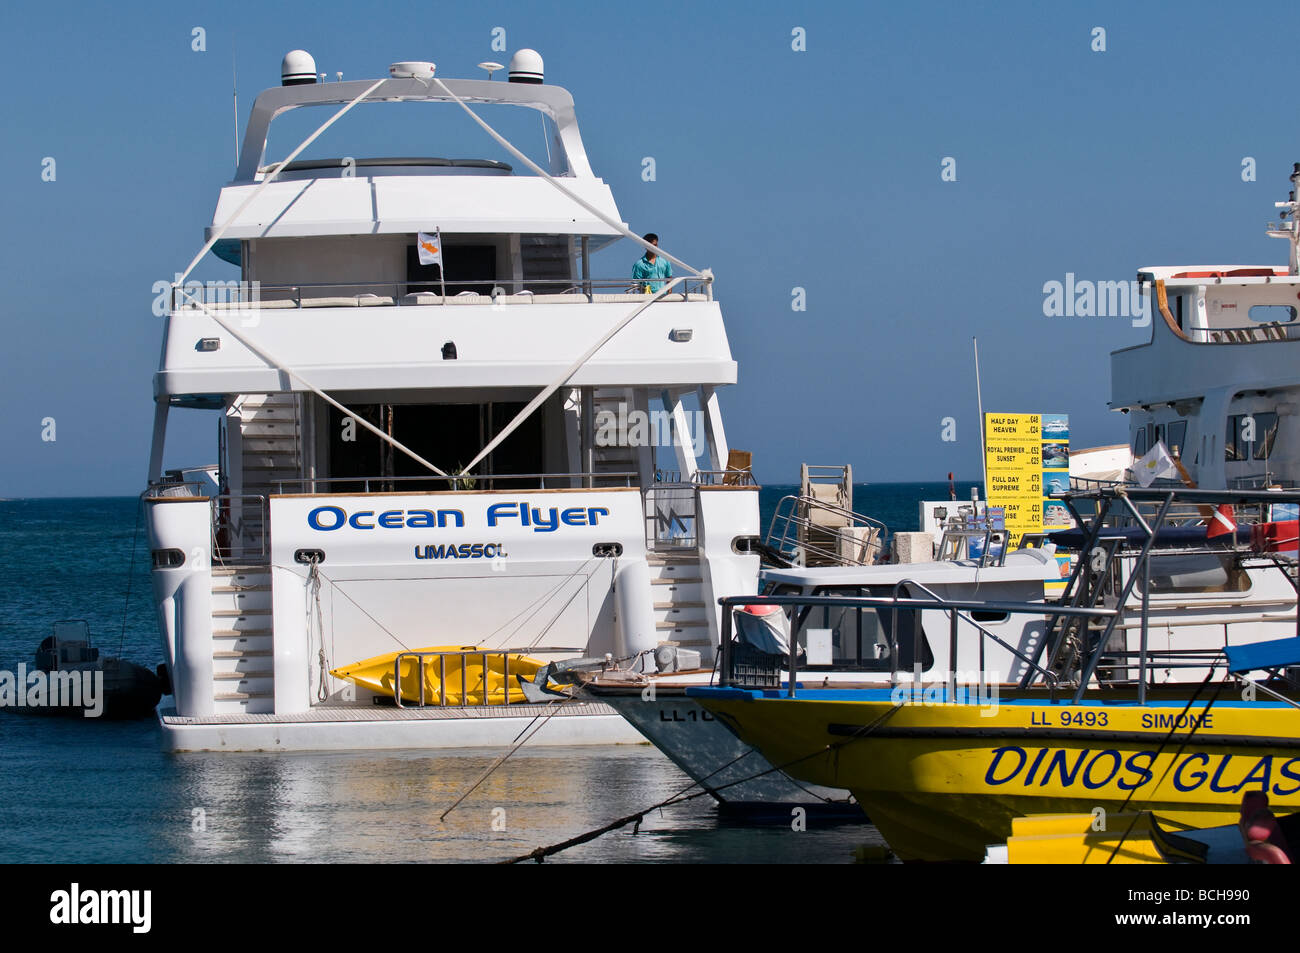 Ocean Flyer in dock, Paphos port, Cyprus Stock Photo